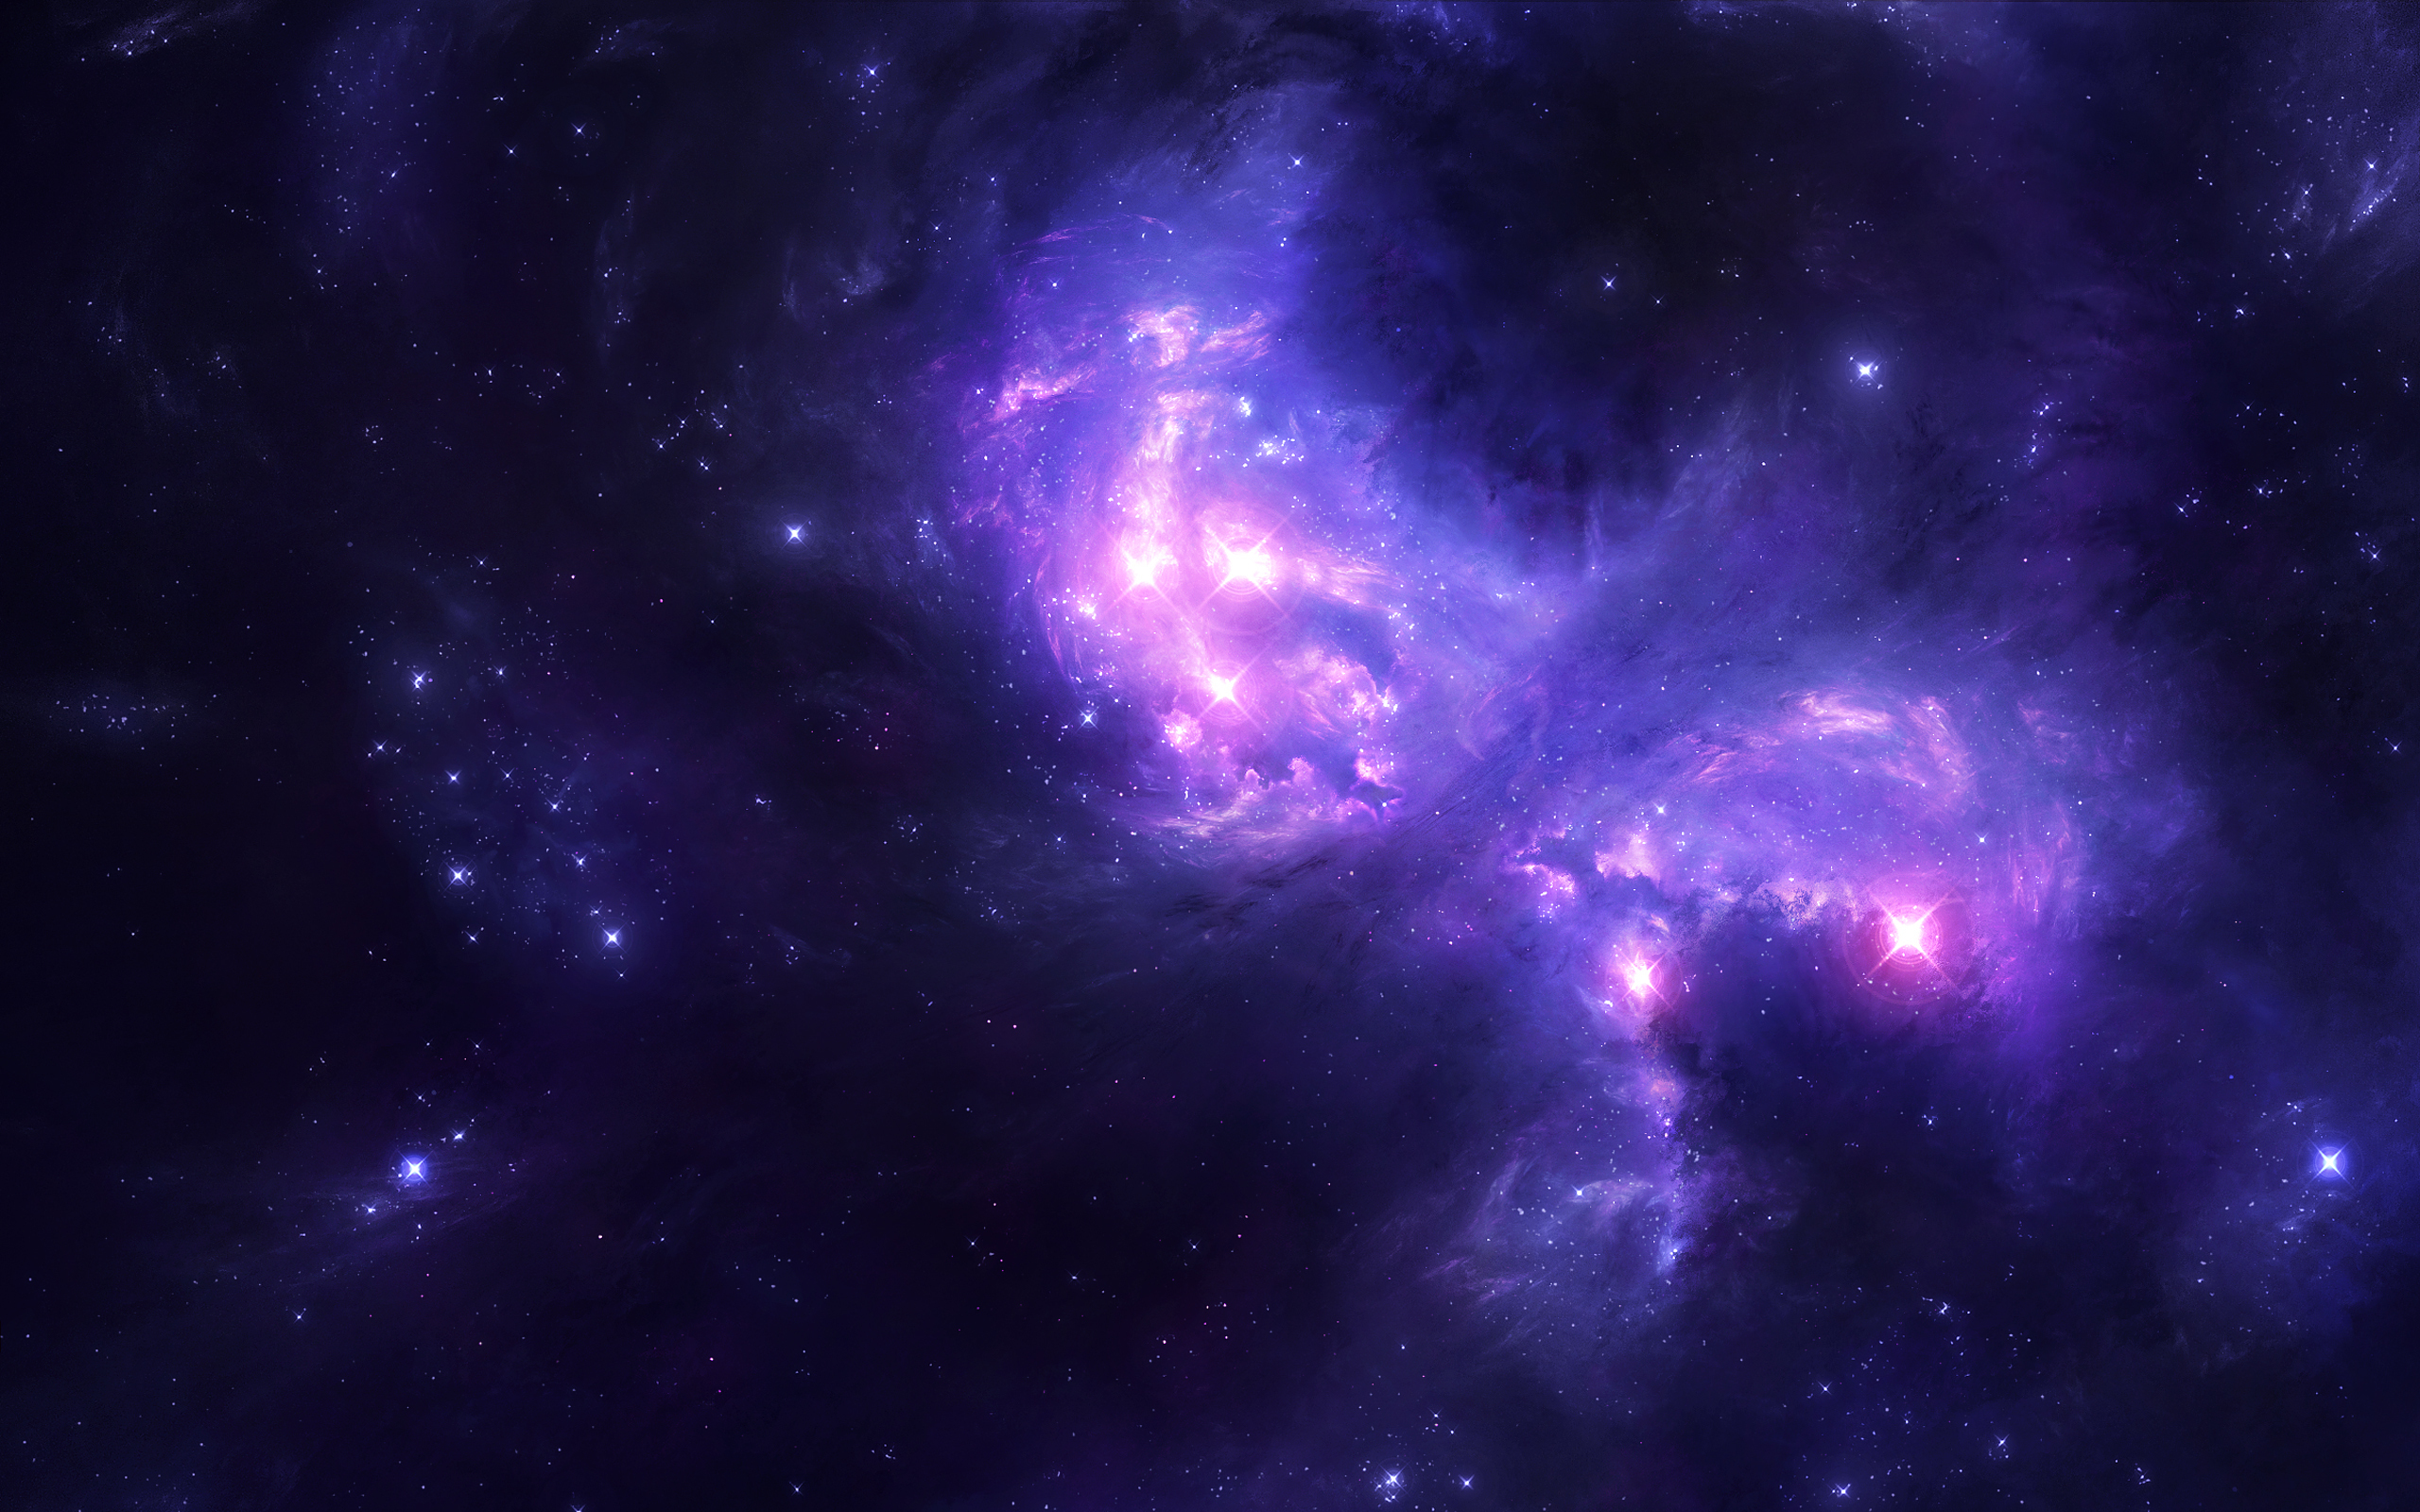 Обои галактика космос свет картинки на рабочий стол на тему Космос - скачать бесплатно